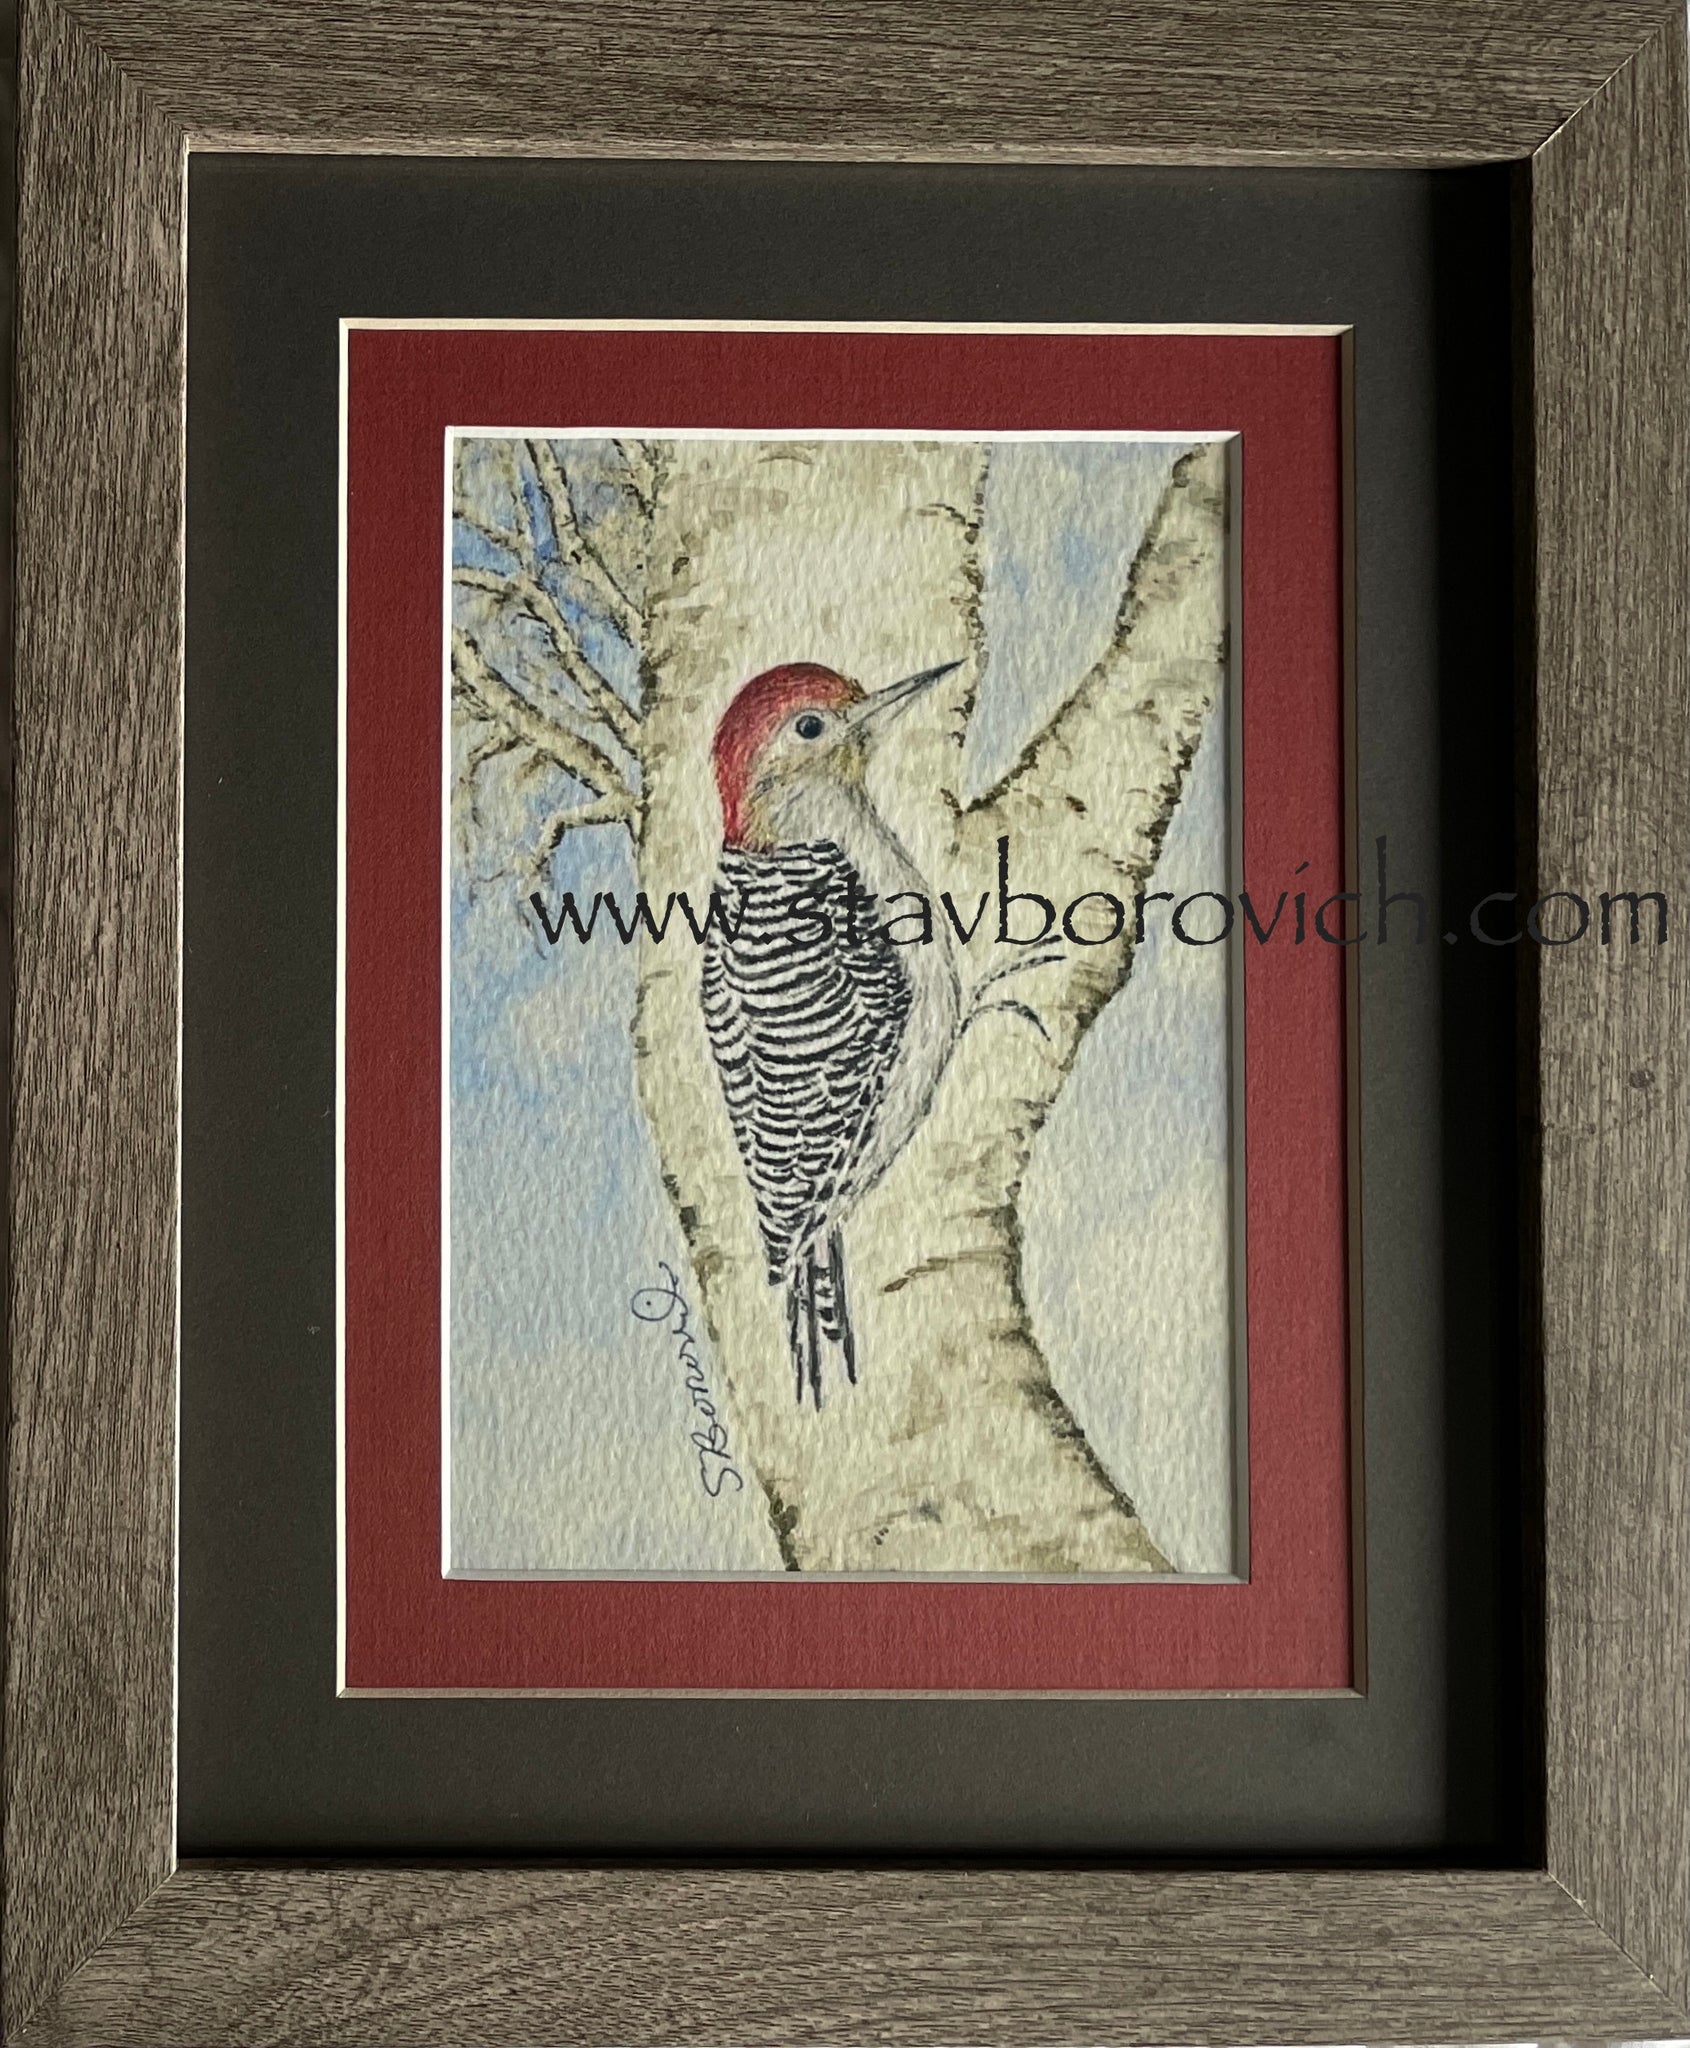 "Red bellied woodpecker" 8x10 framed art print